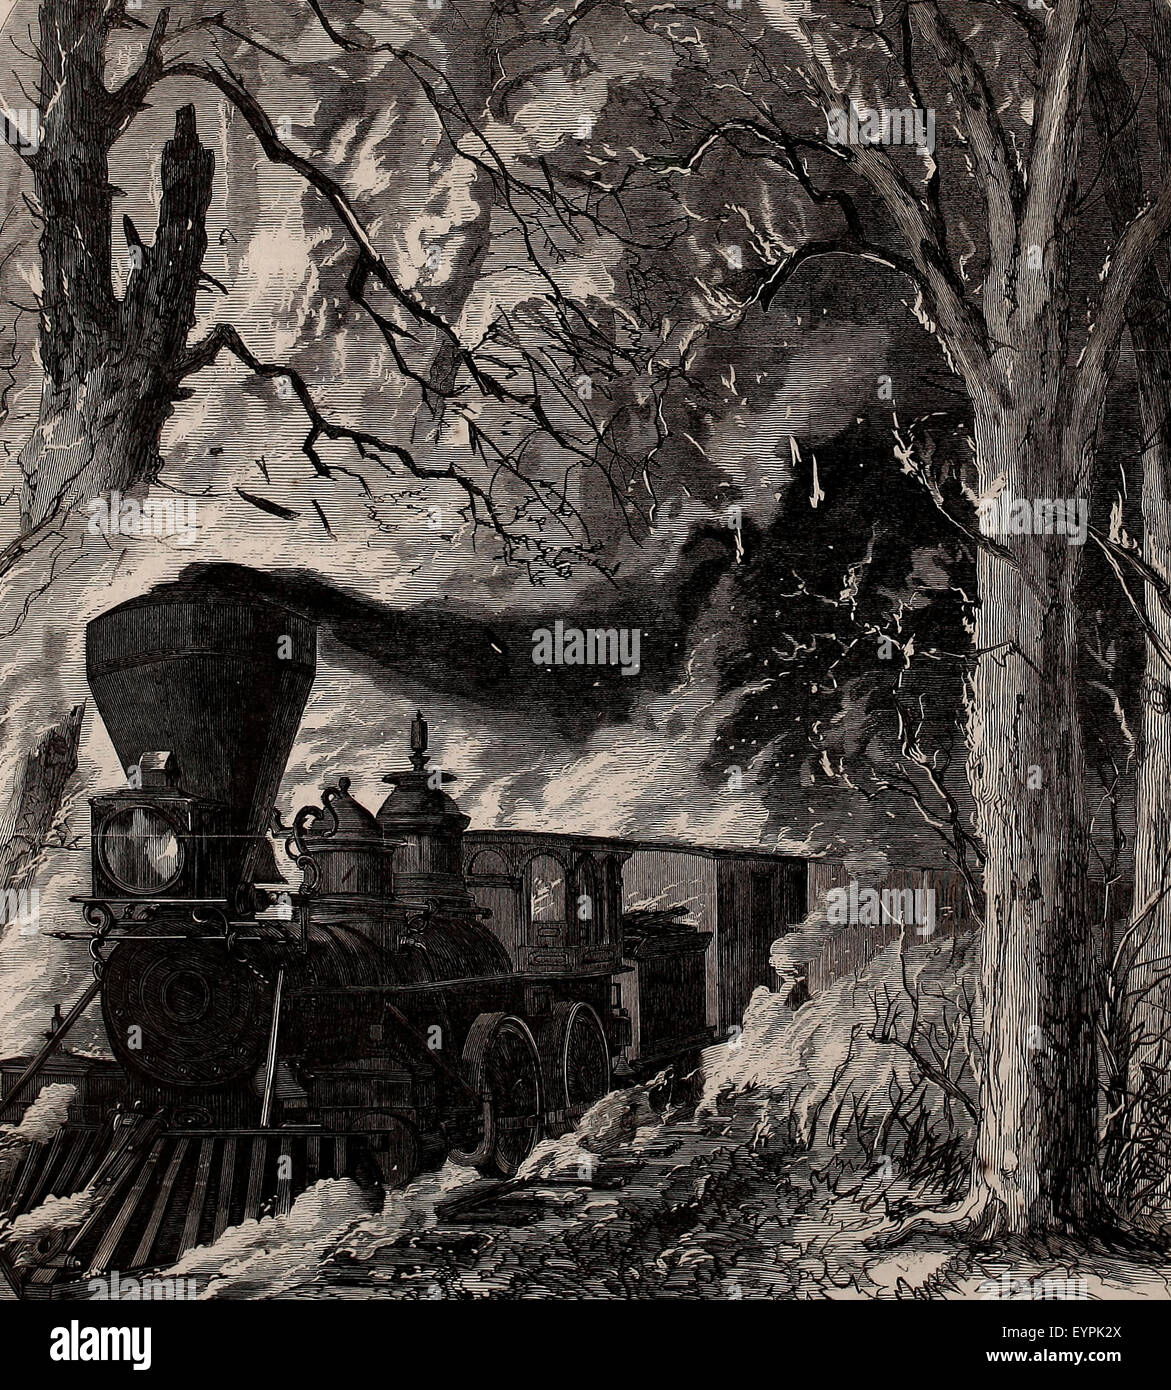 Reisen durchs Feuer - Angst vor Gefahr eines Eisenbahn-Zug, am Cedar Sumpf. auf der östlichen Eisenbahn, Maine, Sonntag, 17. September 1865 Stockfoto